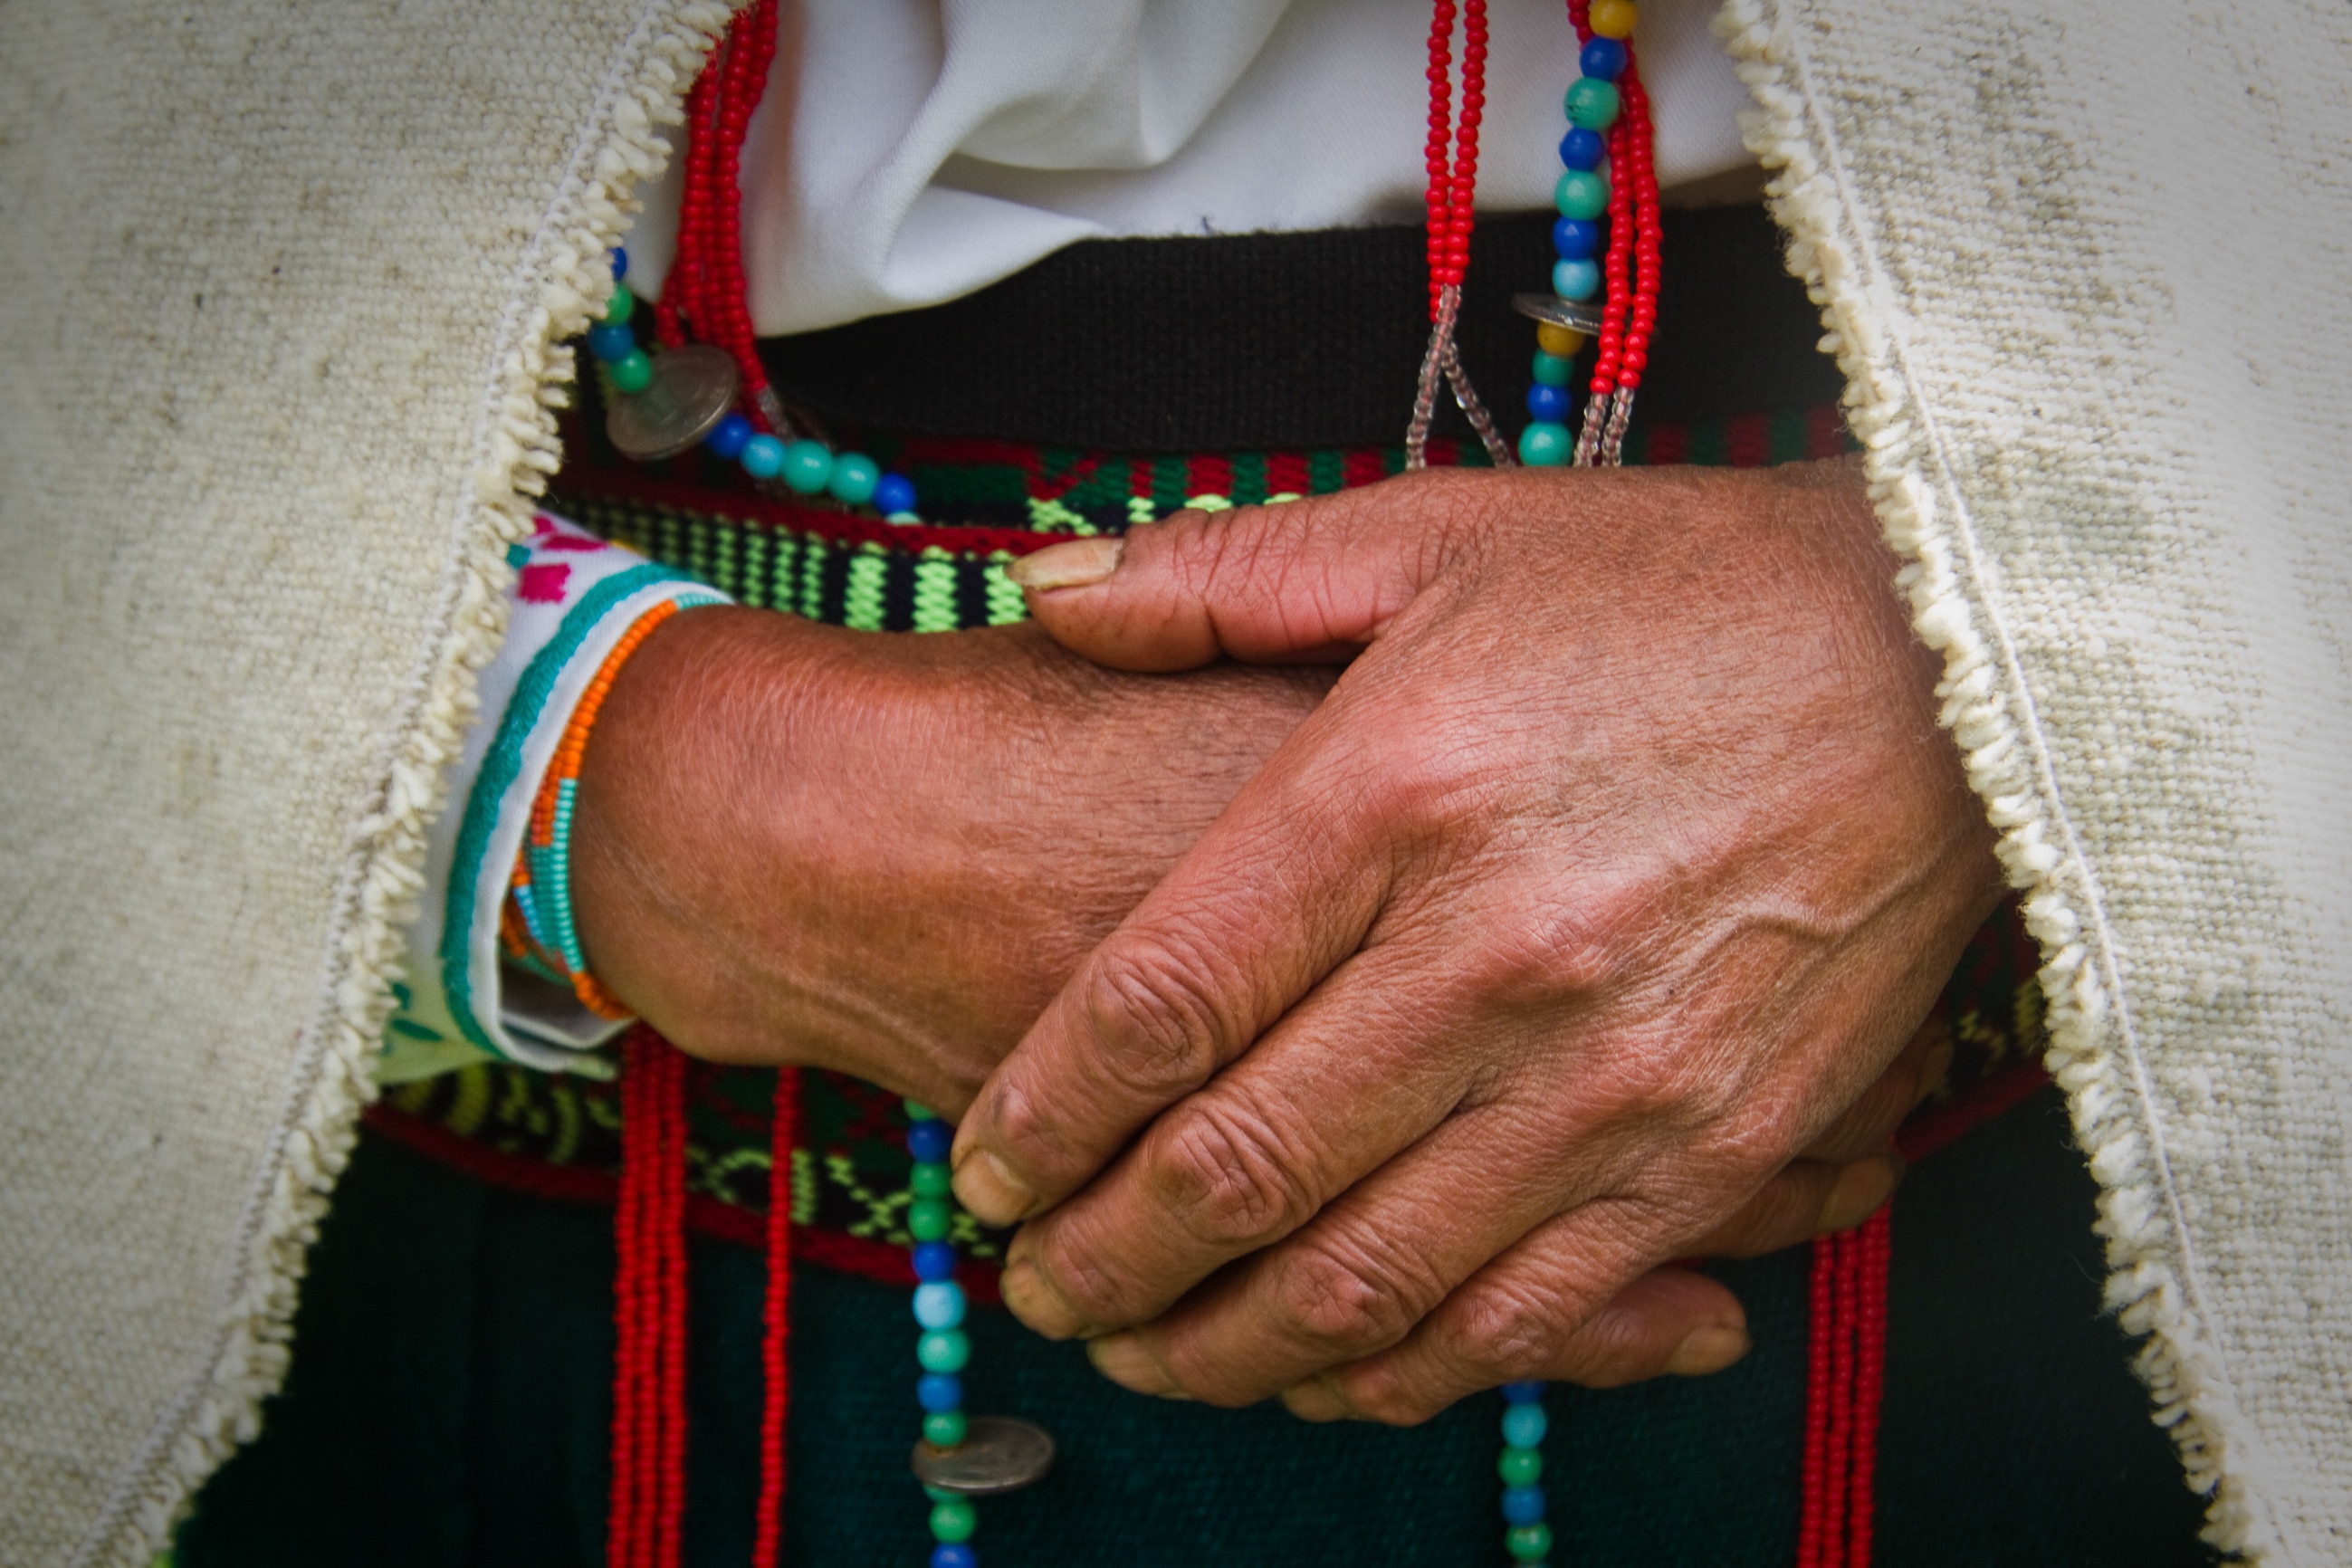 Une personne autochtone se tient les mains l’une contre l’autre. Elle porte des vêtements traditionnels. Ces vêtements comprennent des perles colorées, une ceinture colorée et un châle tissé. 